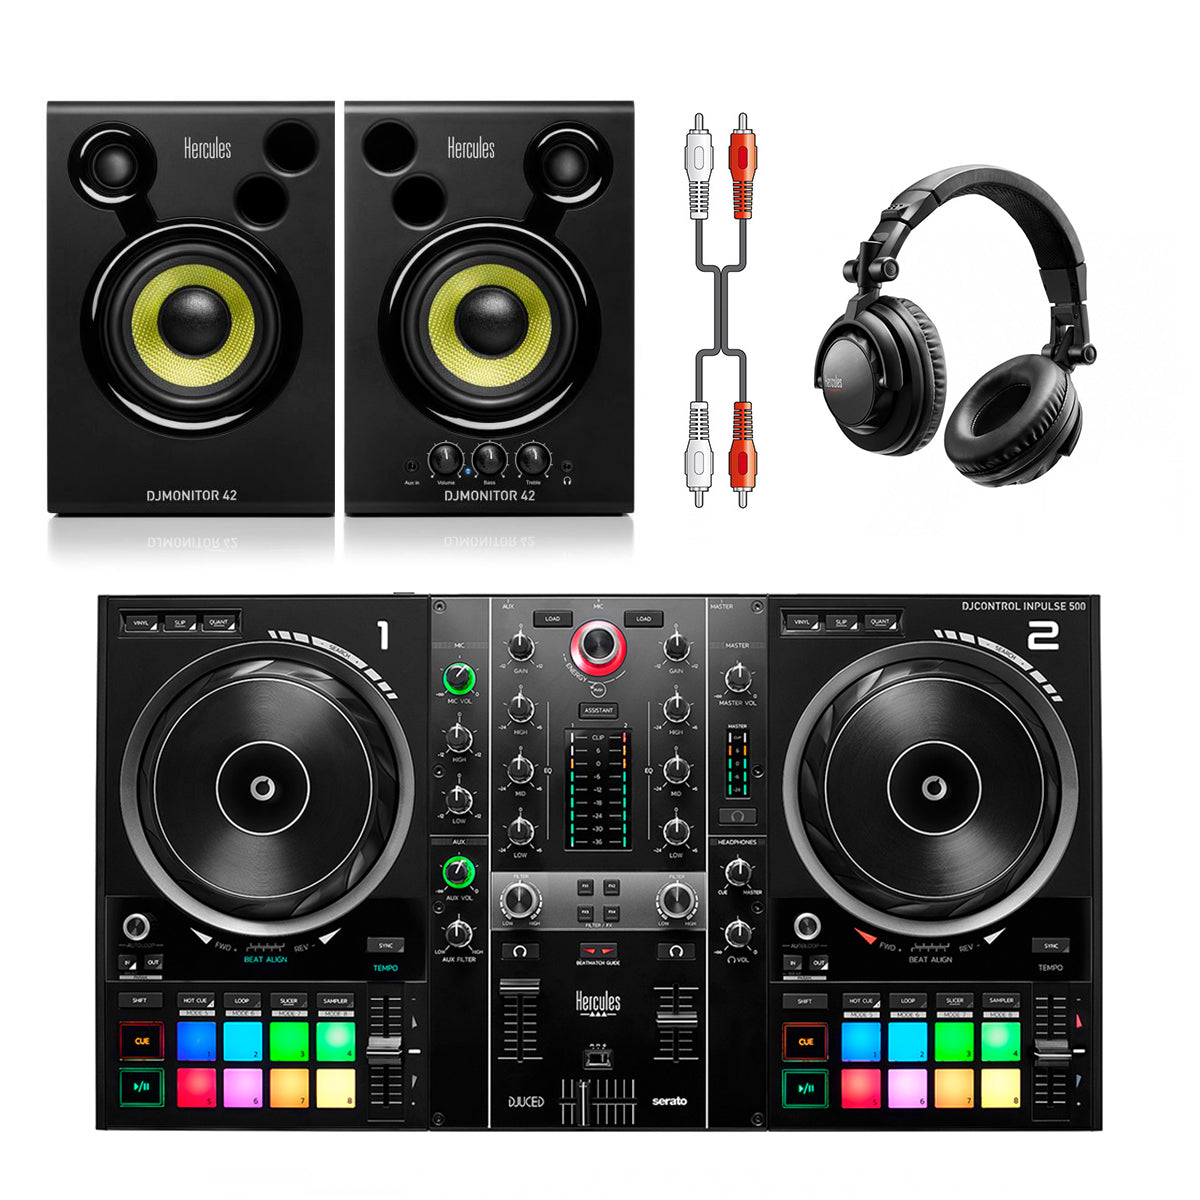 Hercules DJControl Inpulse 500 + Monitor 42 + DJ45 Headphones